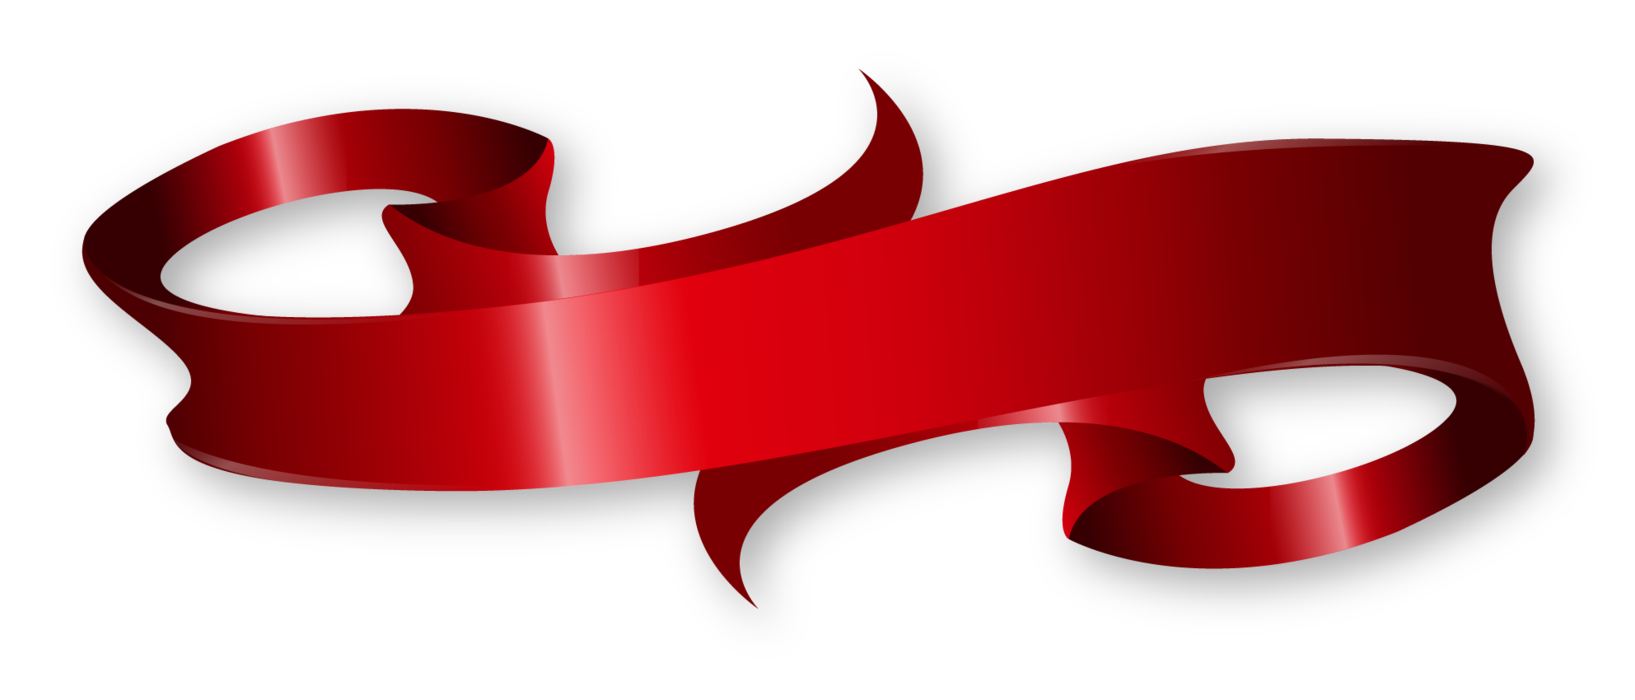 Download Red Ribbon Transparent Background PNG, SVG Clip art for ...